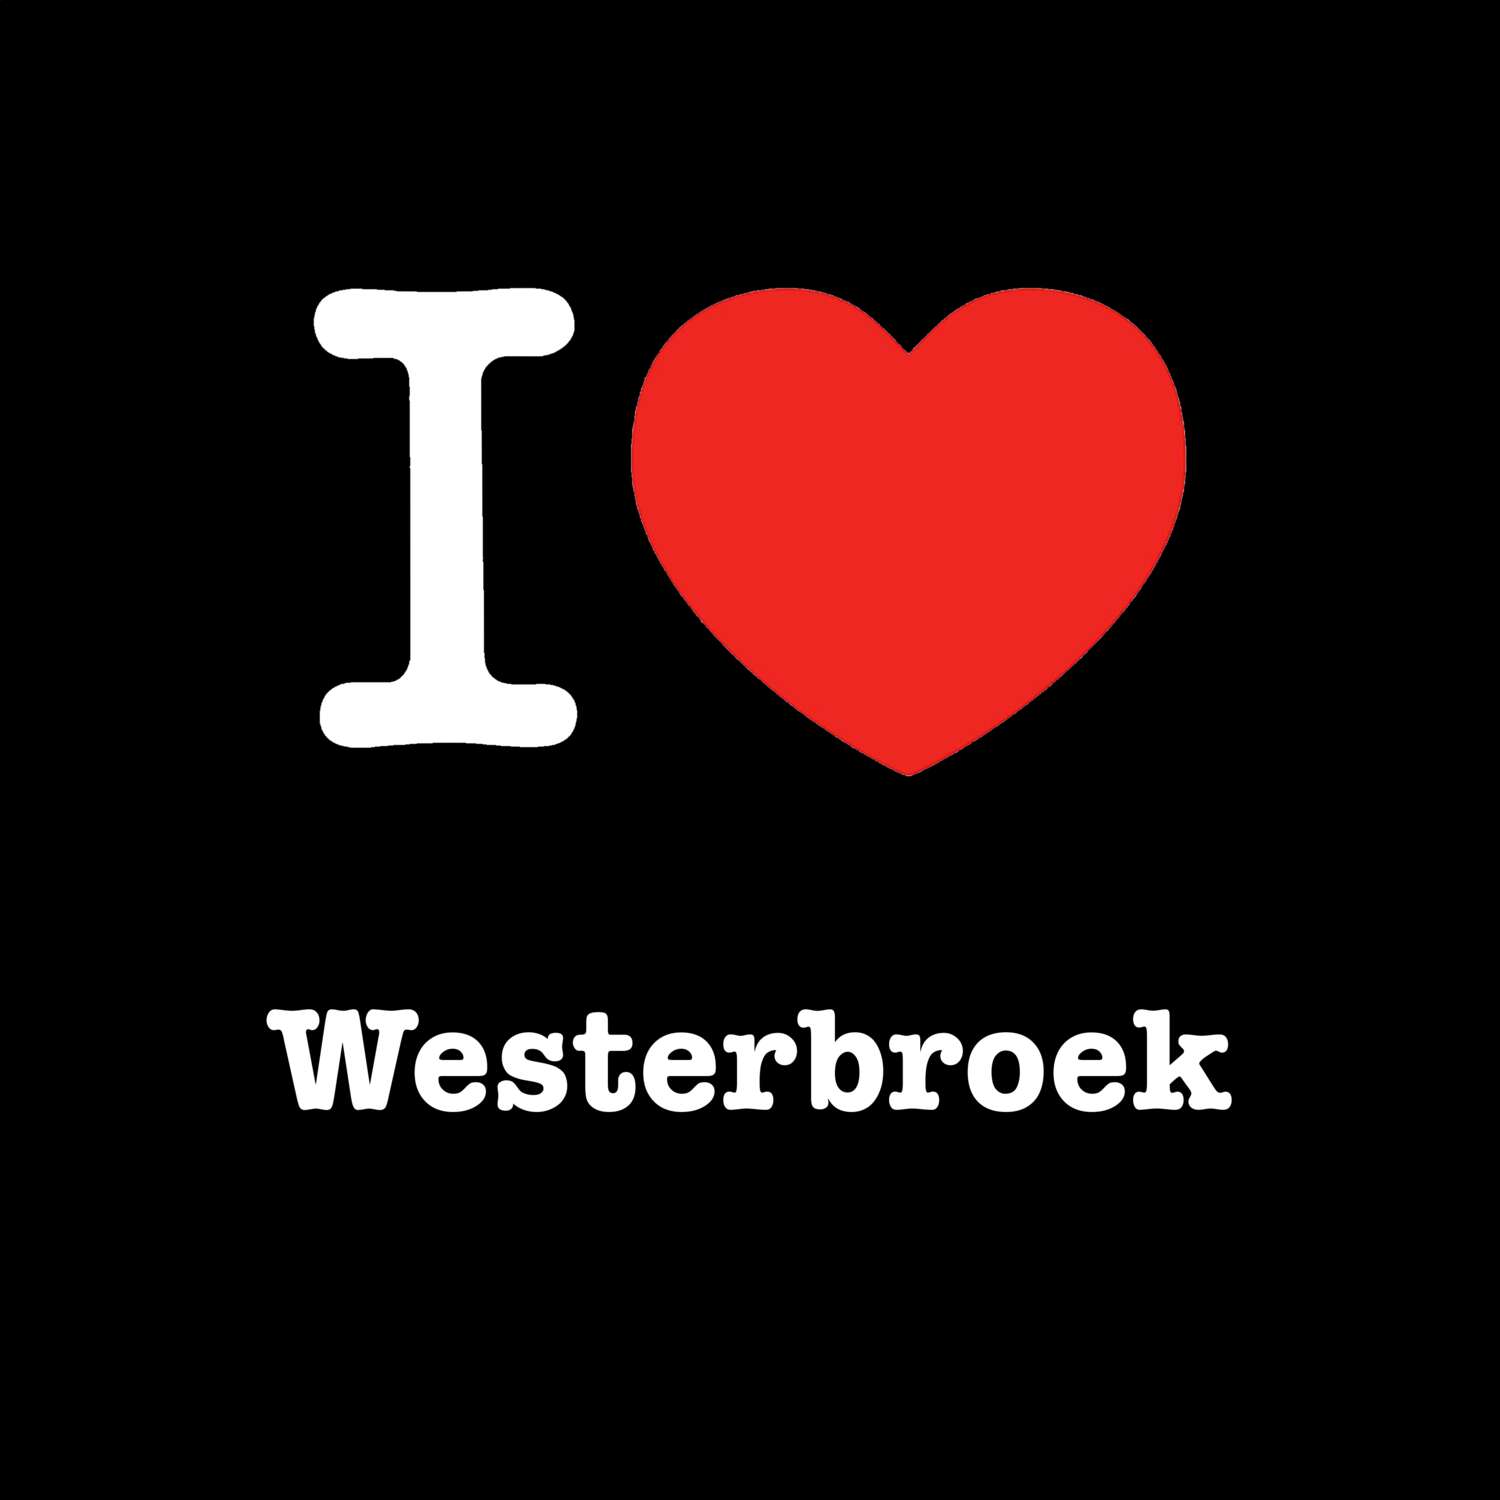 Westerbroek T-Shirt »I love«